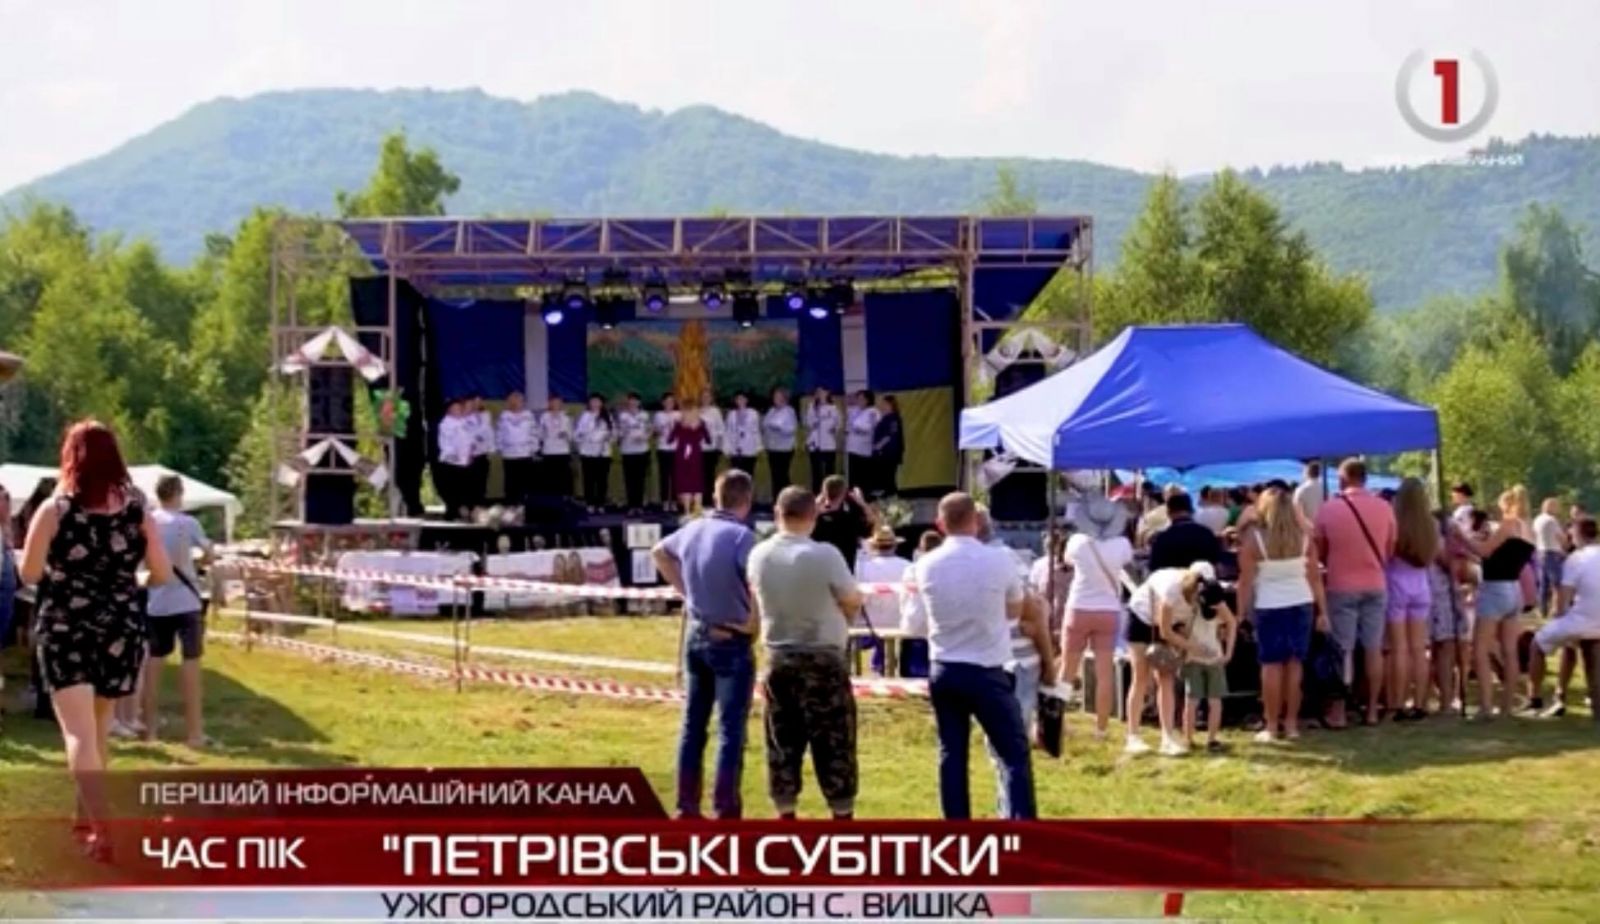 "Петрівські субітки": на вершині гірського схилу в селі Вишка відбувся фестиваль (ВІДЕО)